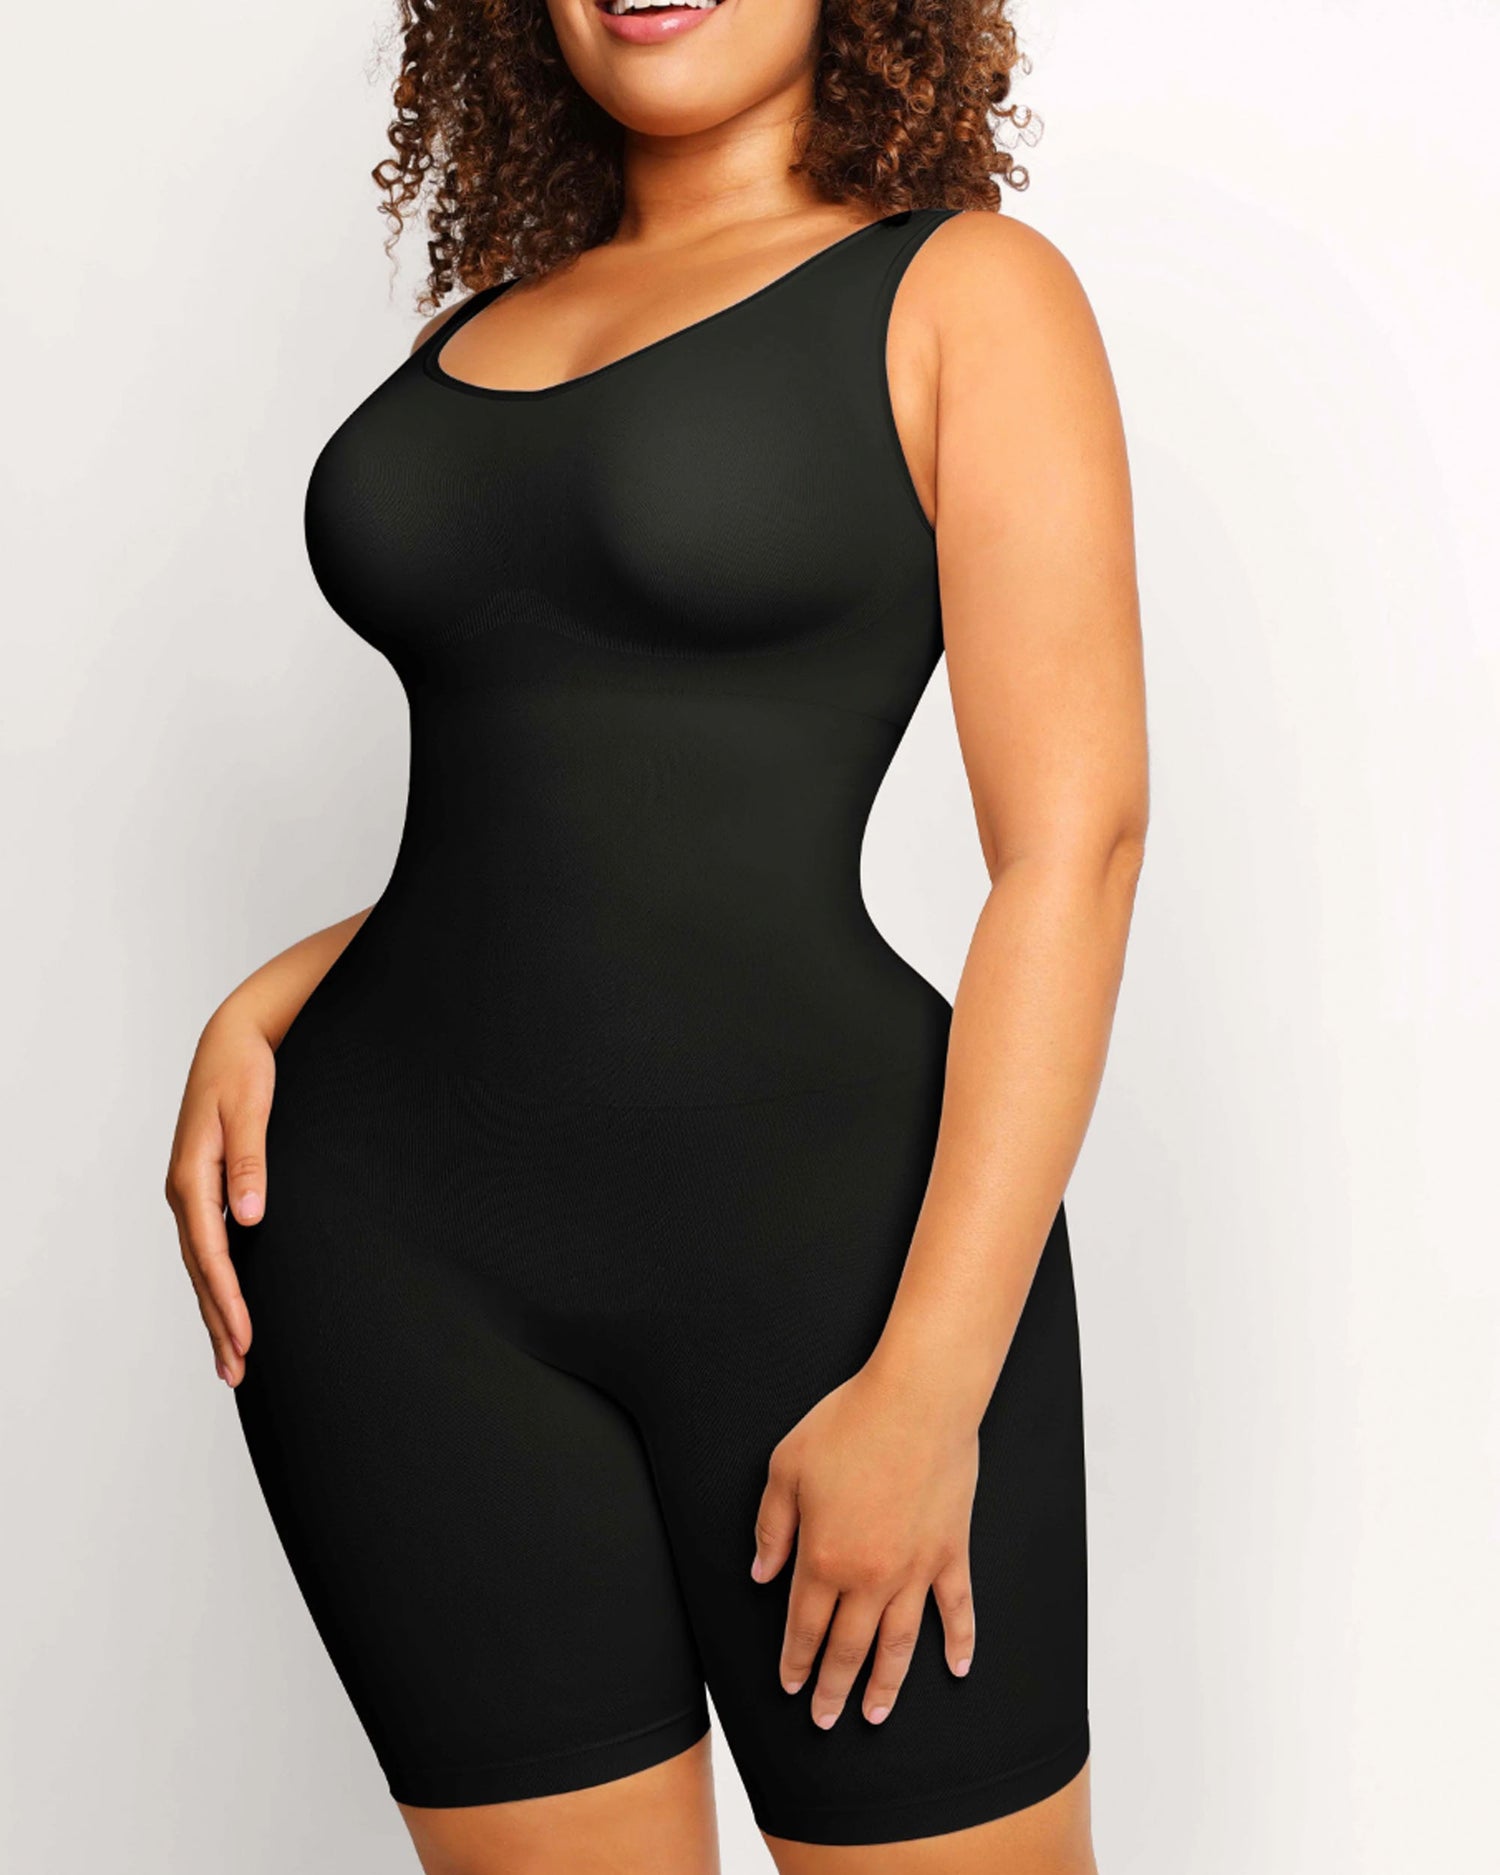 fullbody and tummy control shapewear brand in Ghana